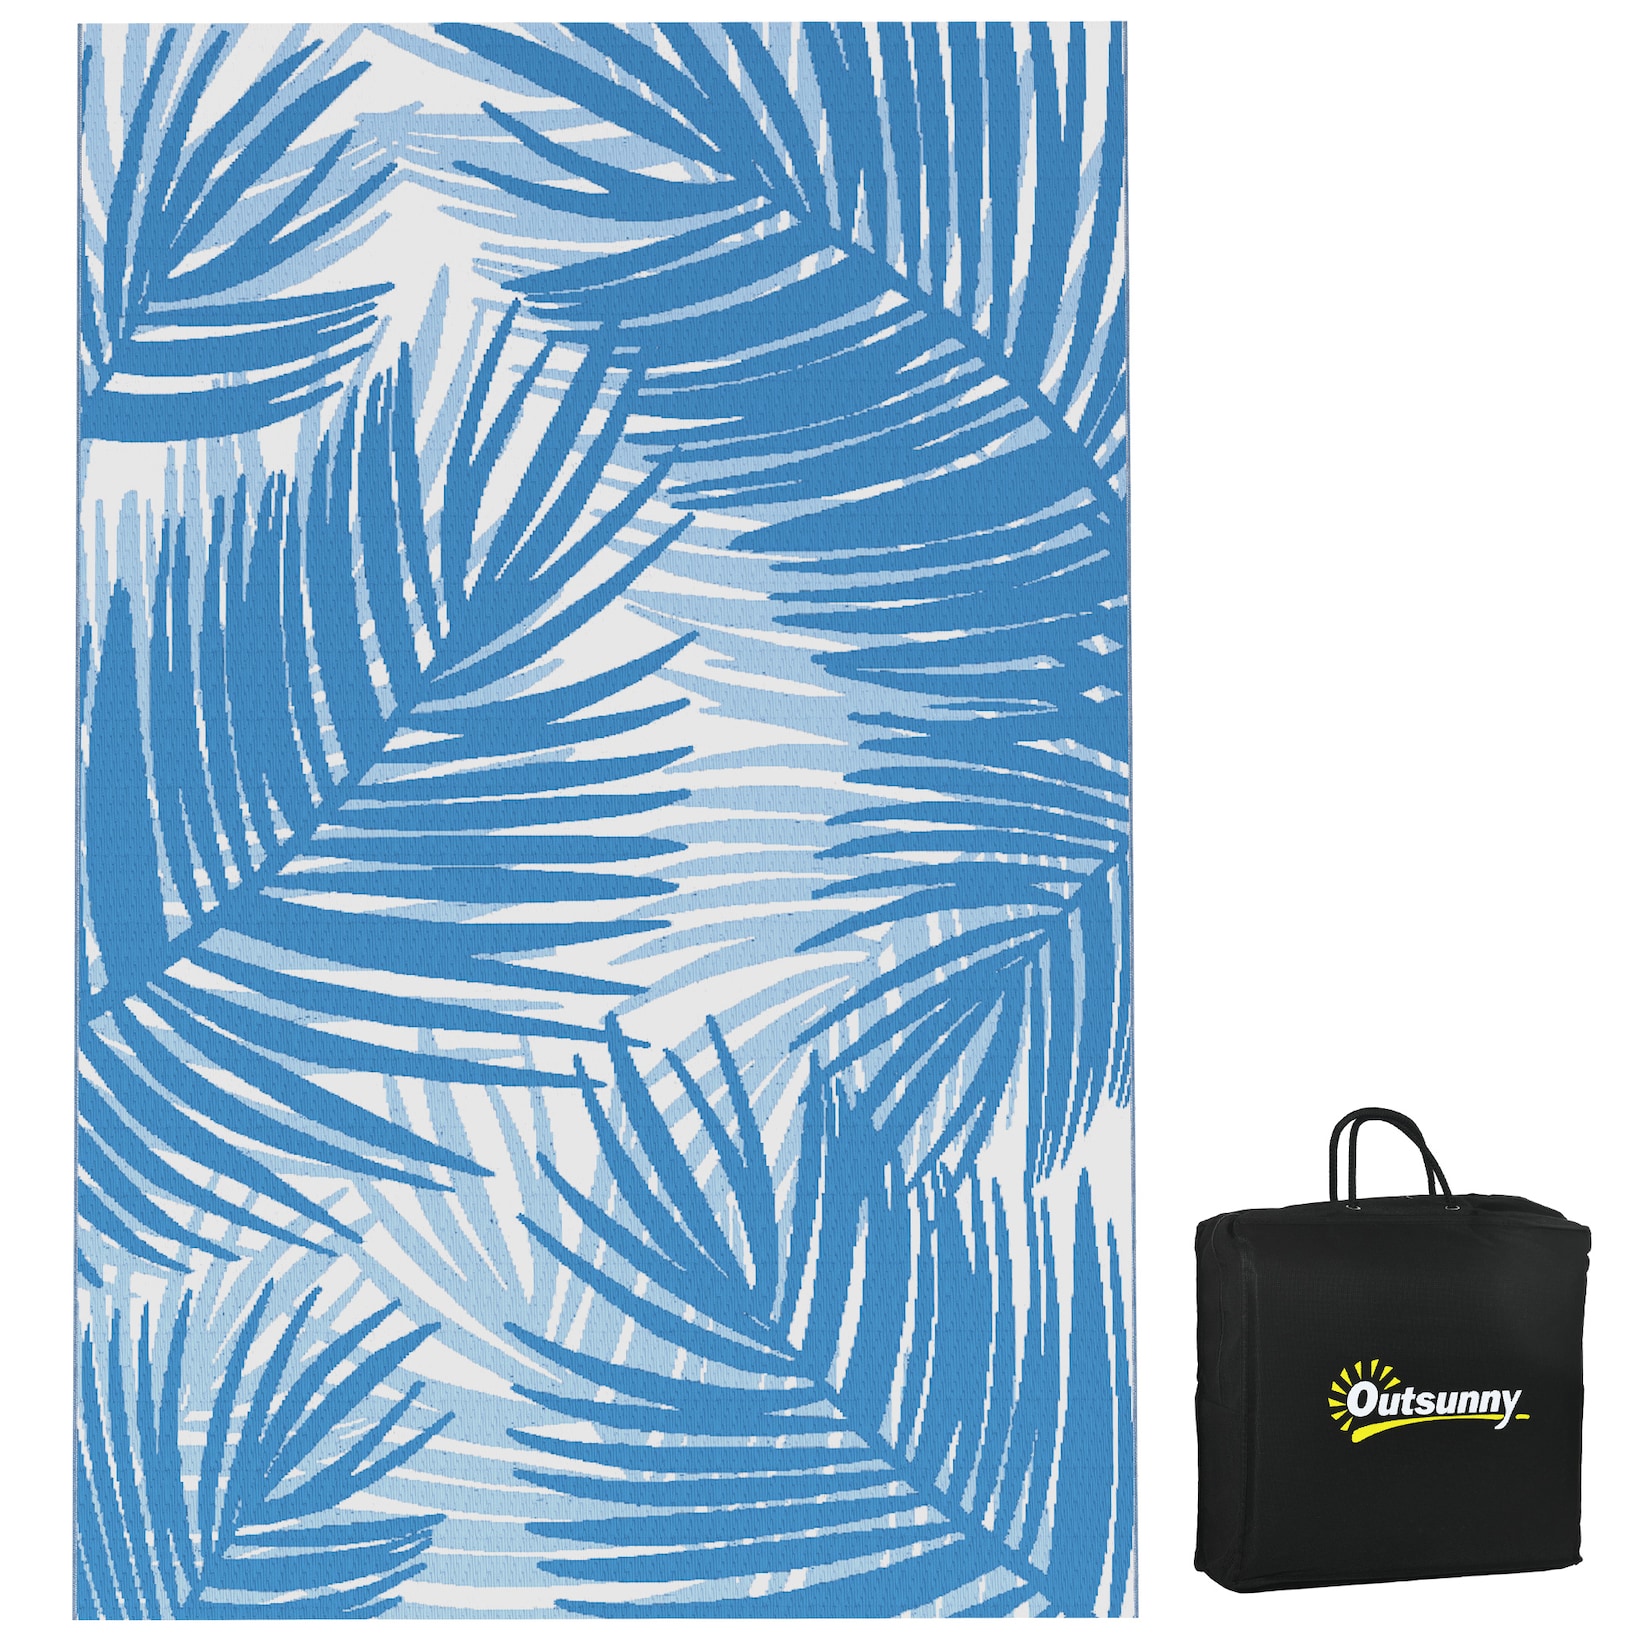 Outsunny Strandmatte mit Wendedesign und Transporttasche blau 182L x 274B x 0,3H cm